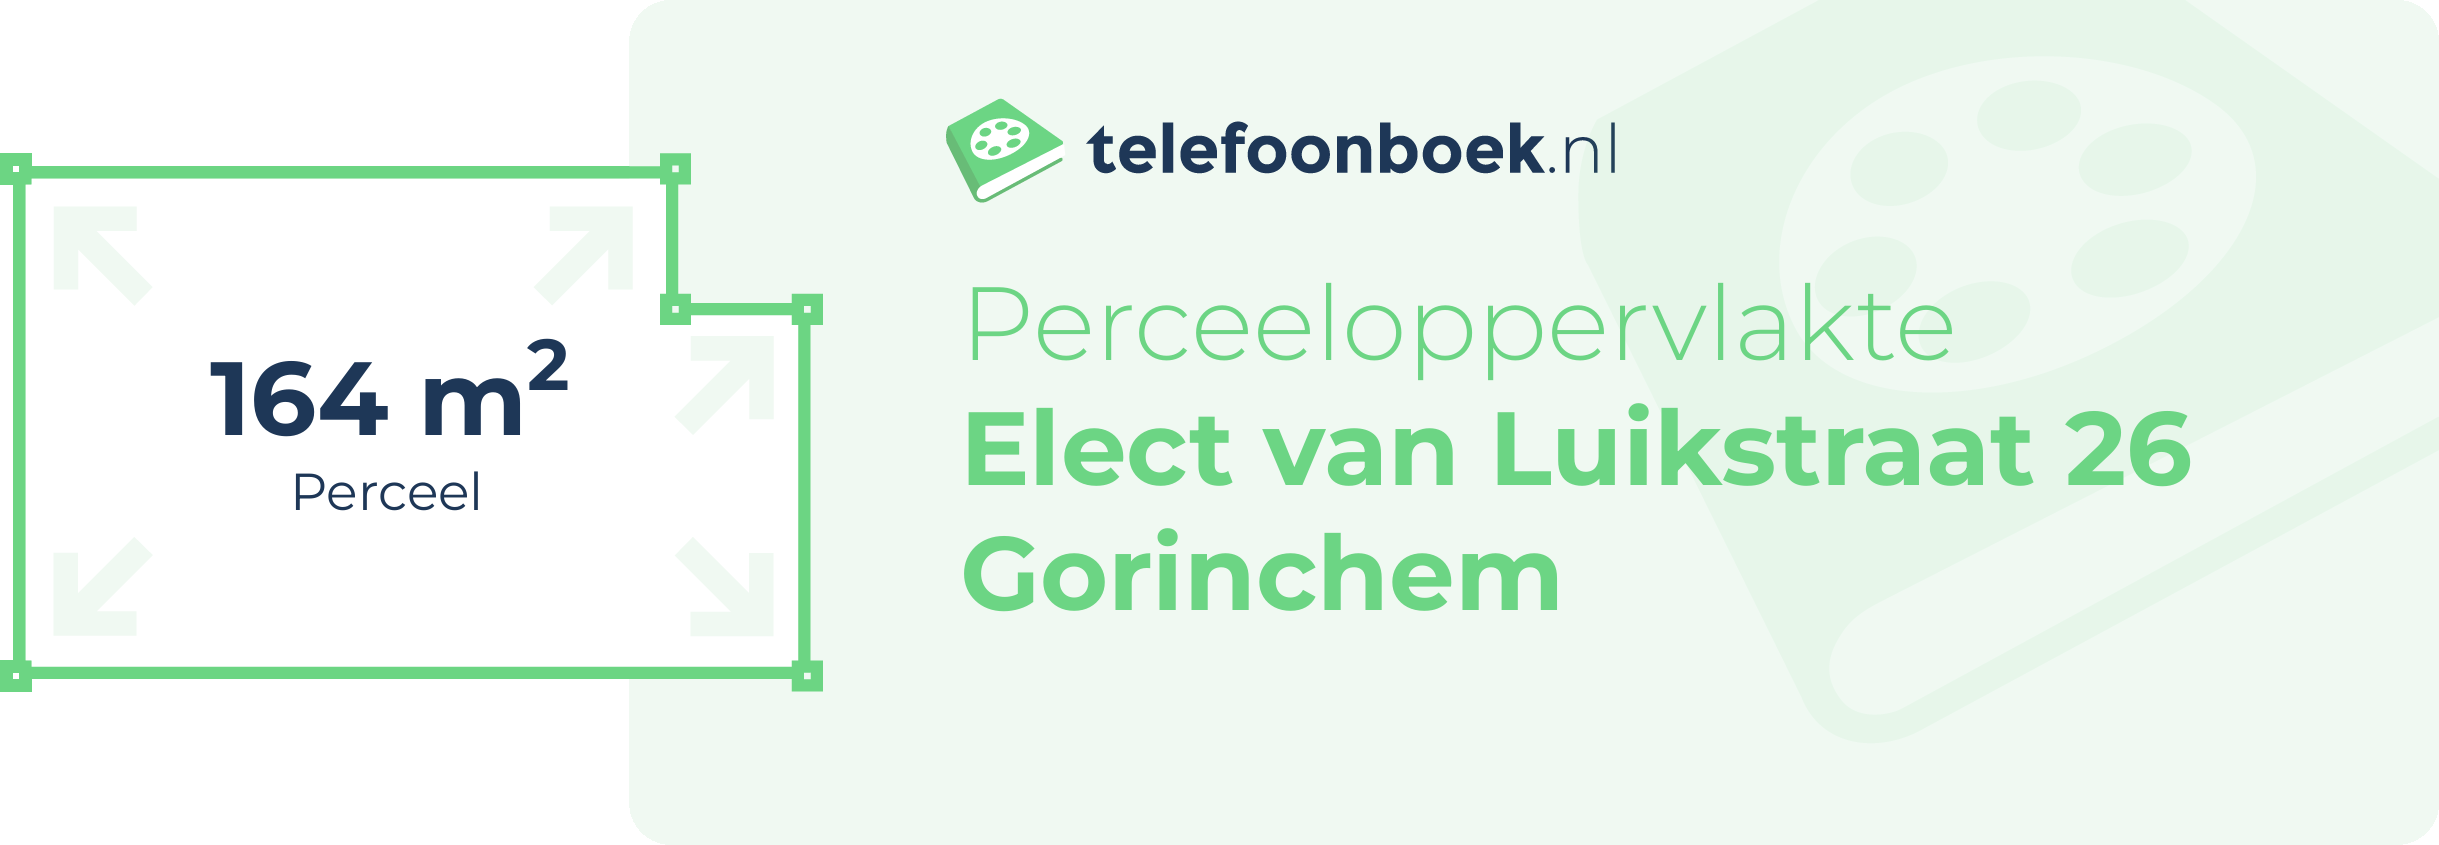 Perceeloppervlakte Elect Van Luikstraat 26 Gorinchem